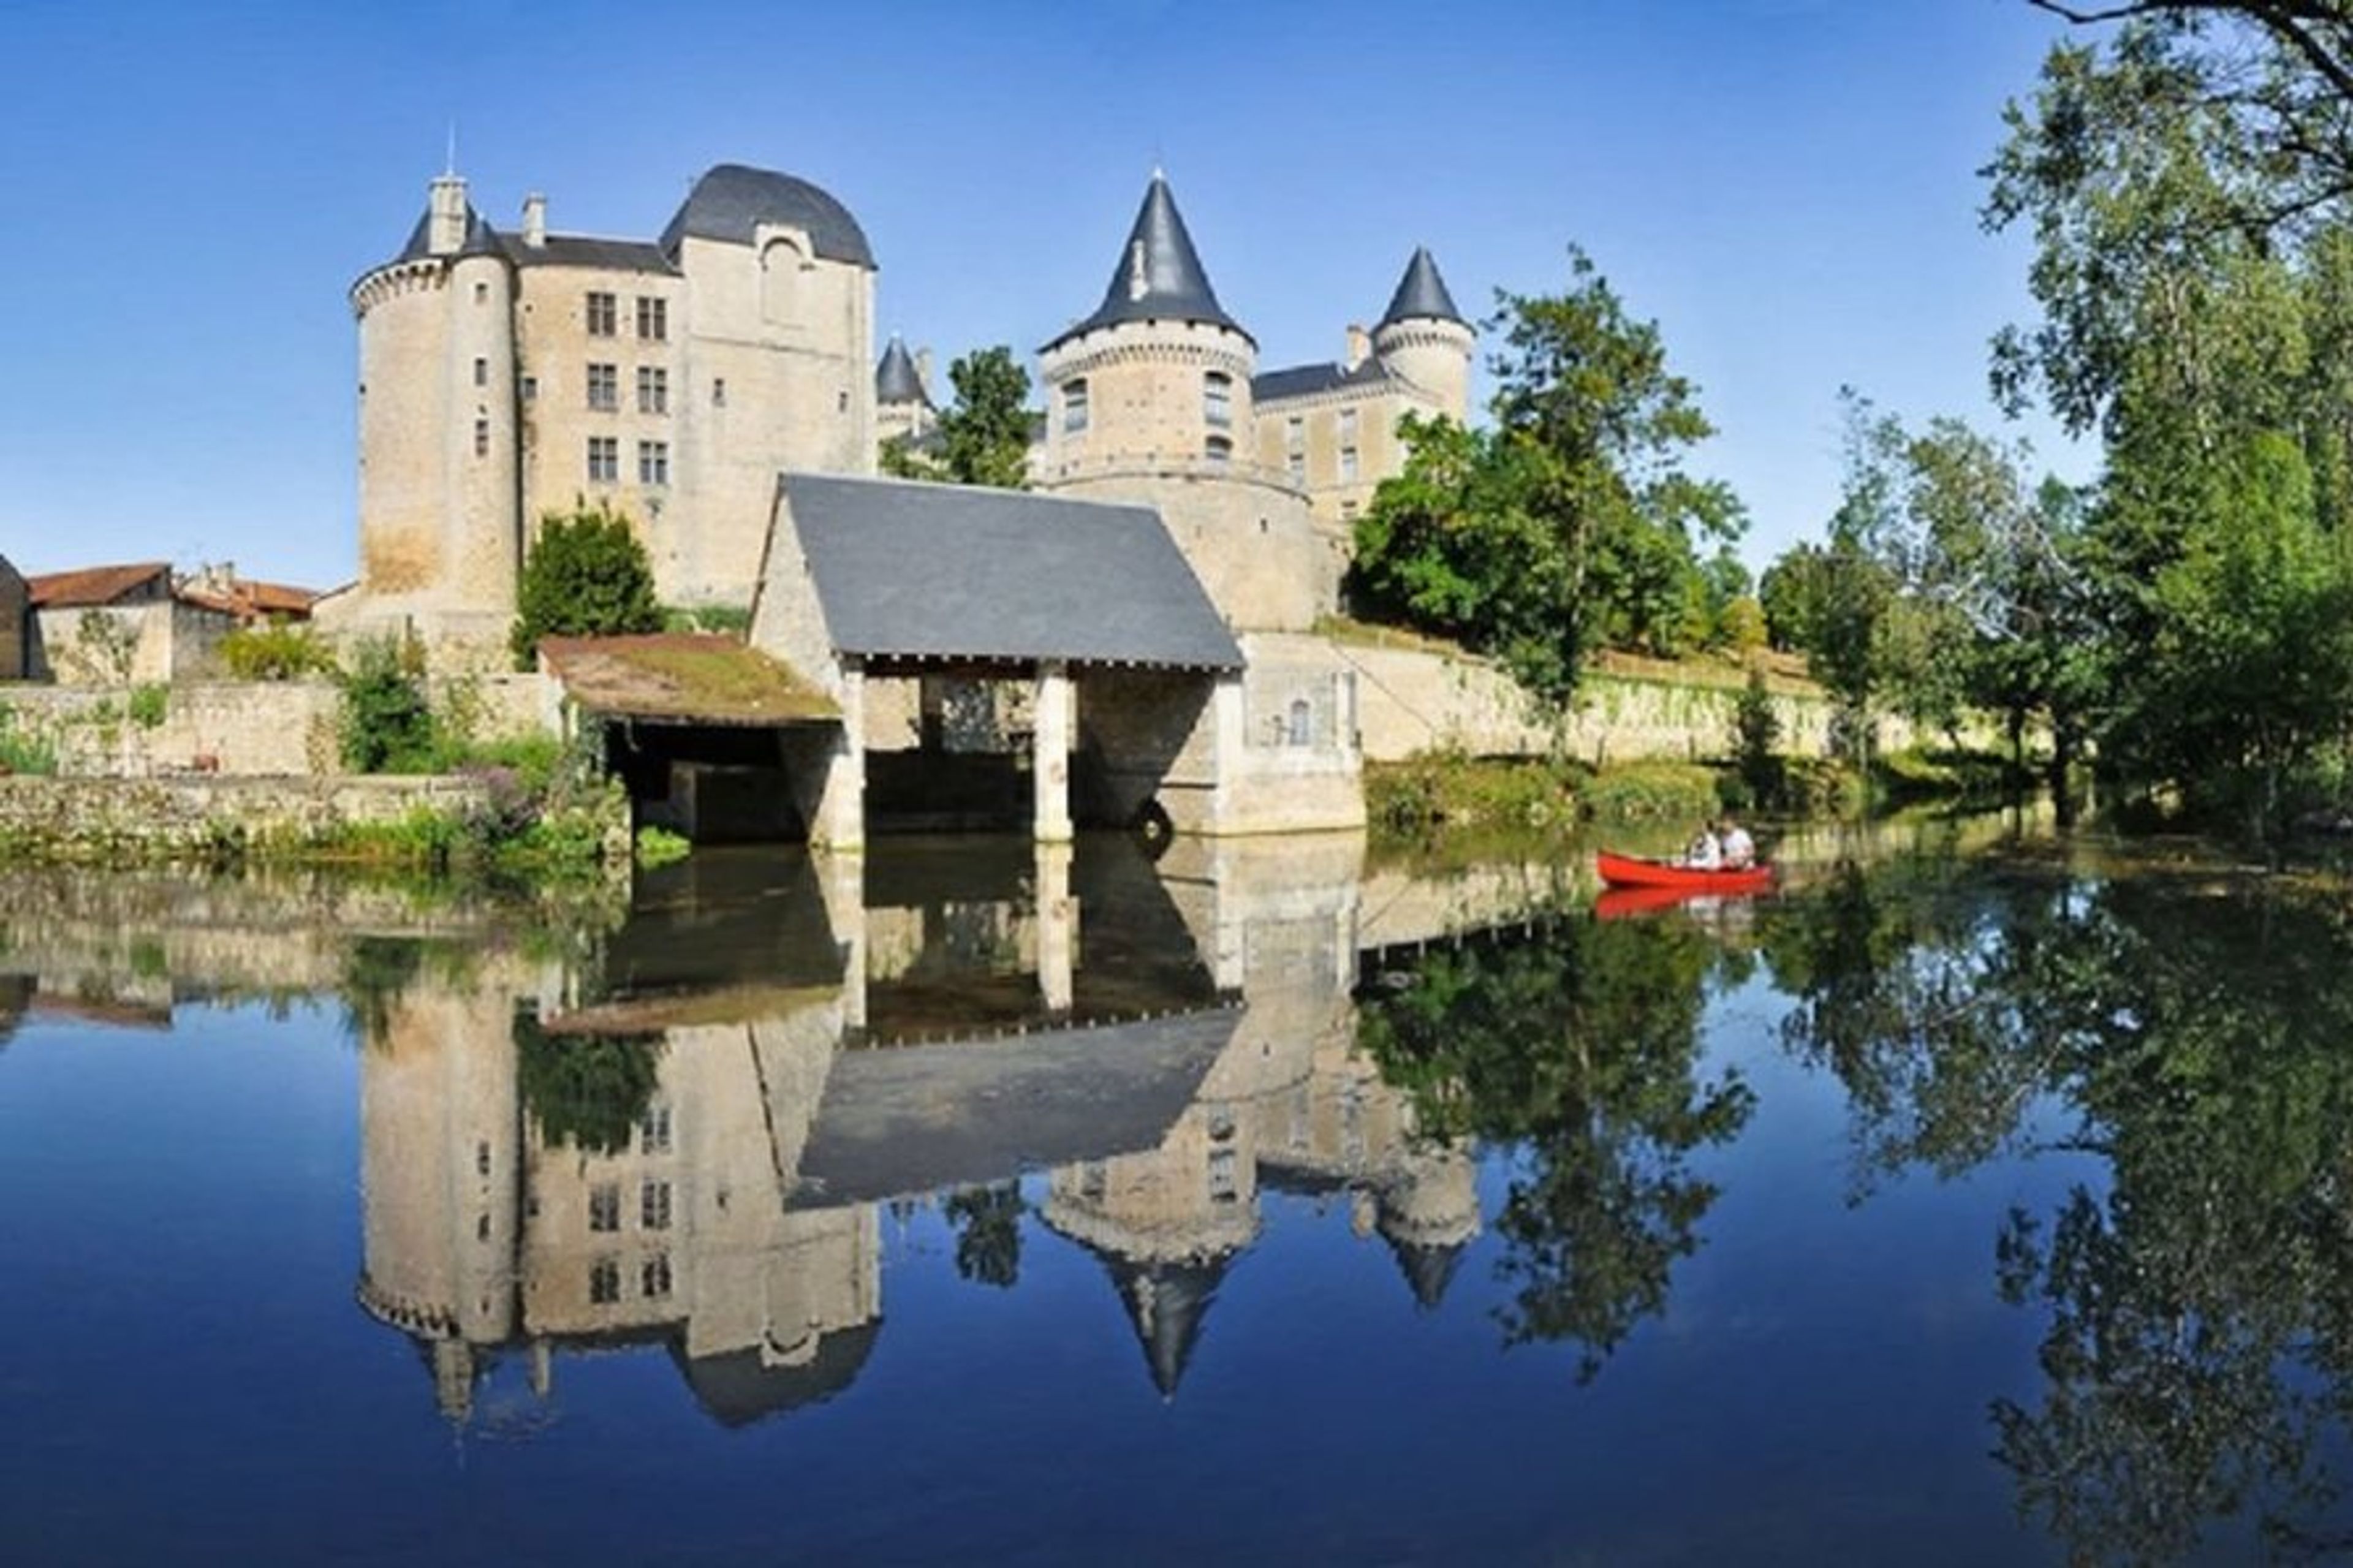 Chateau de Verteuil